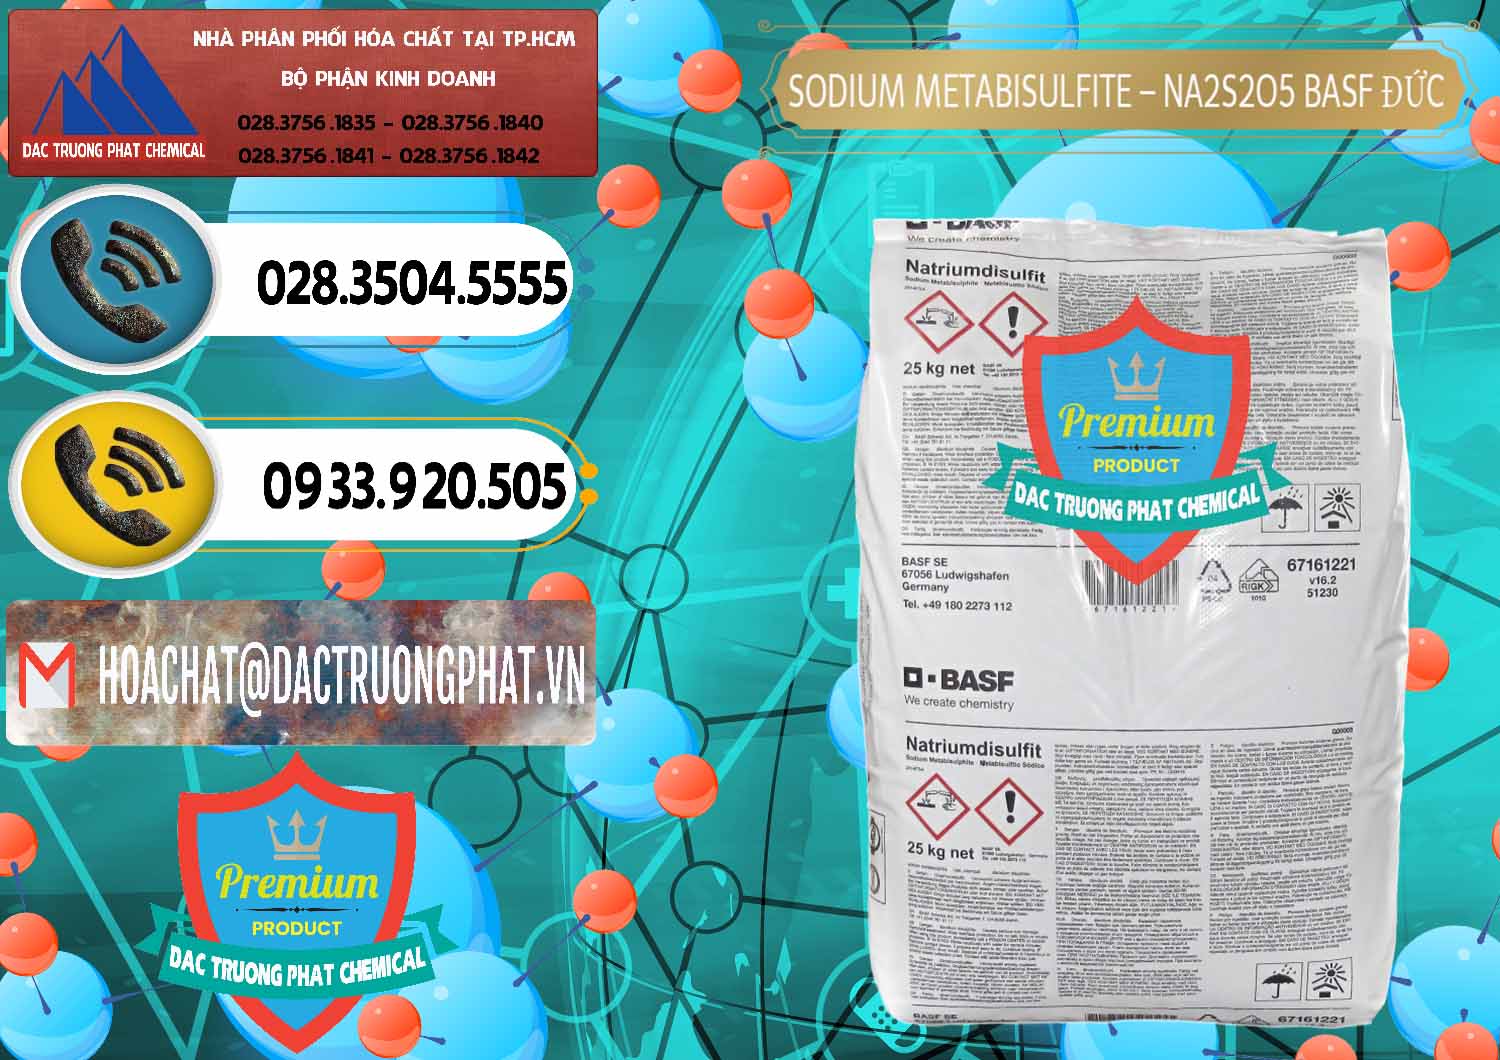 Nơi nhập khẩu - bán Sodium Metabisulfite - NA2S2O5 Food Grade BASF Đức Germany - 0143 - Cty chuyên phân phối & kinh doanh hóa chất tại TP.HCM - hoachatdetnhuom.vn